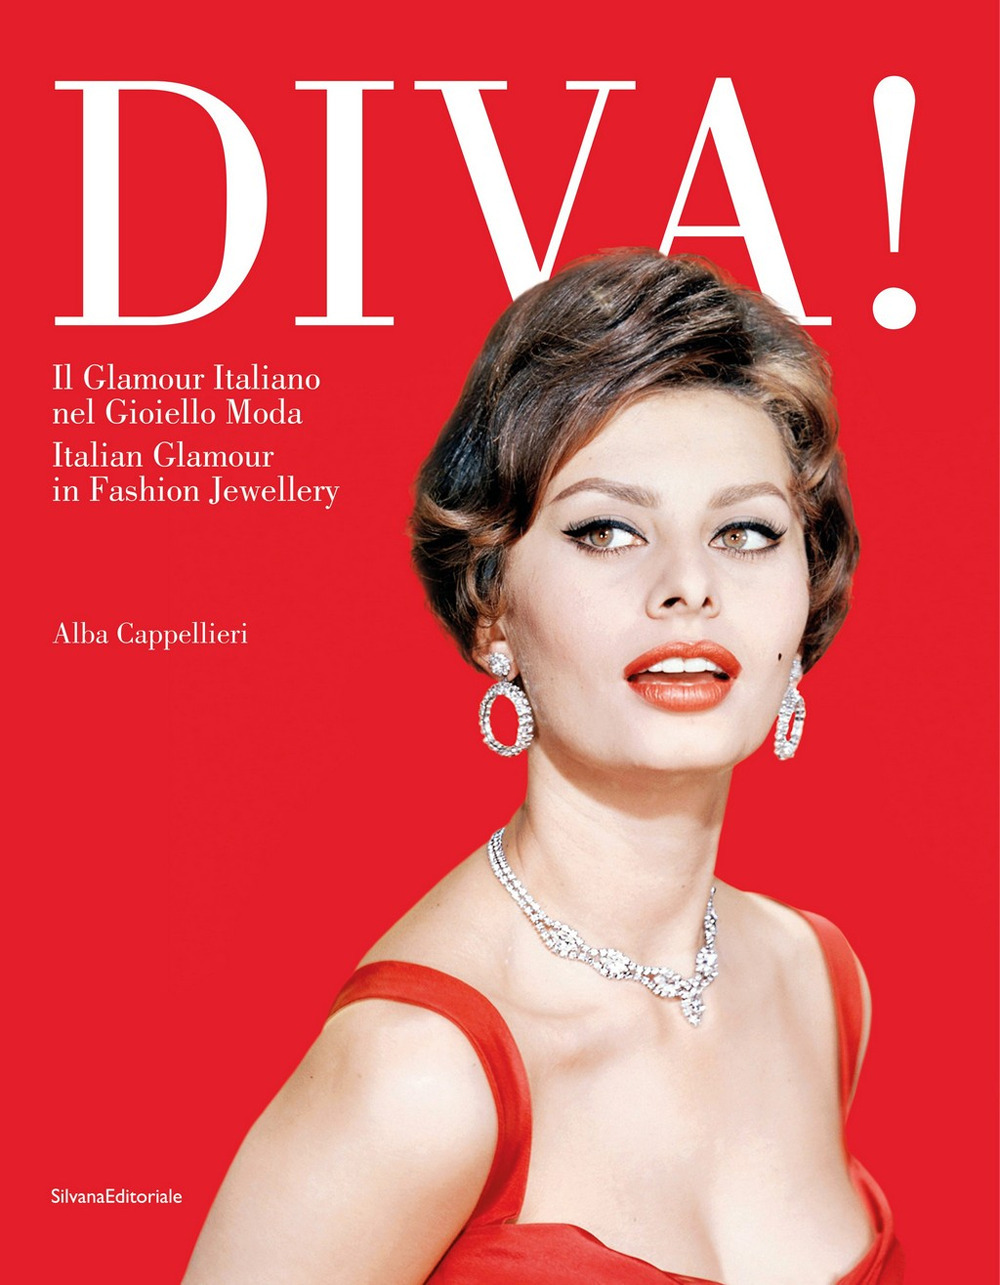 Libri Alba Cappellieri - Diva! Il Glamour Italiano Nel Gioiello Moda. Ediz. Italiana E Inglese NUOVO SIGILLATO, EDIZIONE DEL 18/05/2021 SUBITO DISPONIBILE